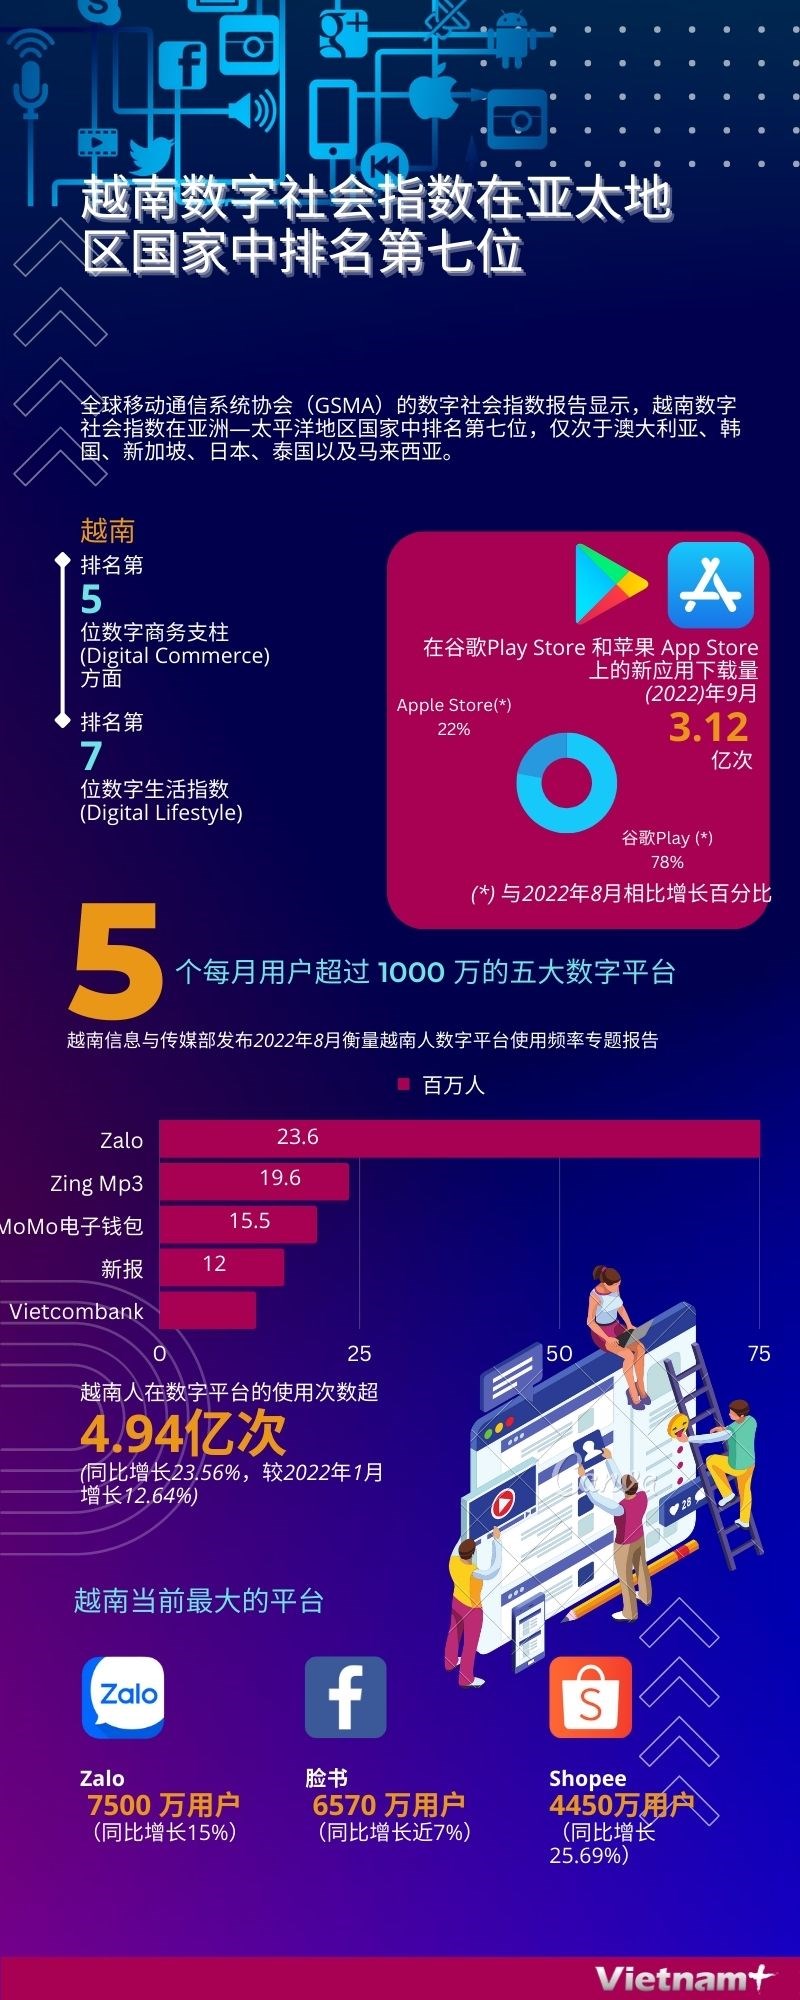 图表新闻：越南数字社会指数在亚太地区国家中排名第七位 hinh anh 1